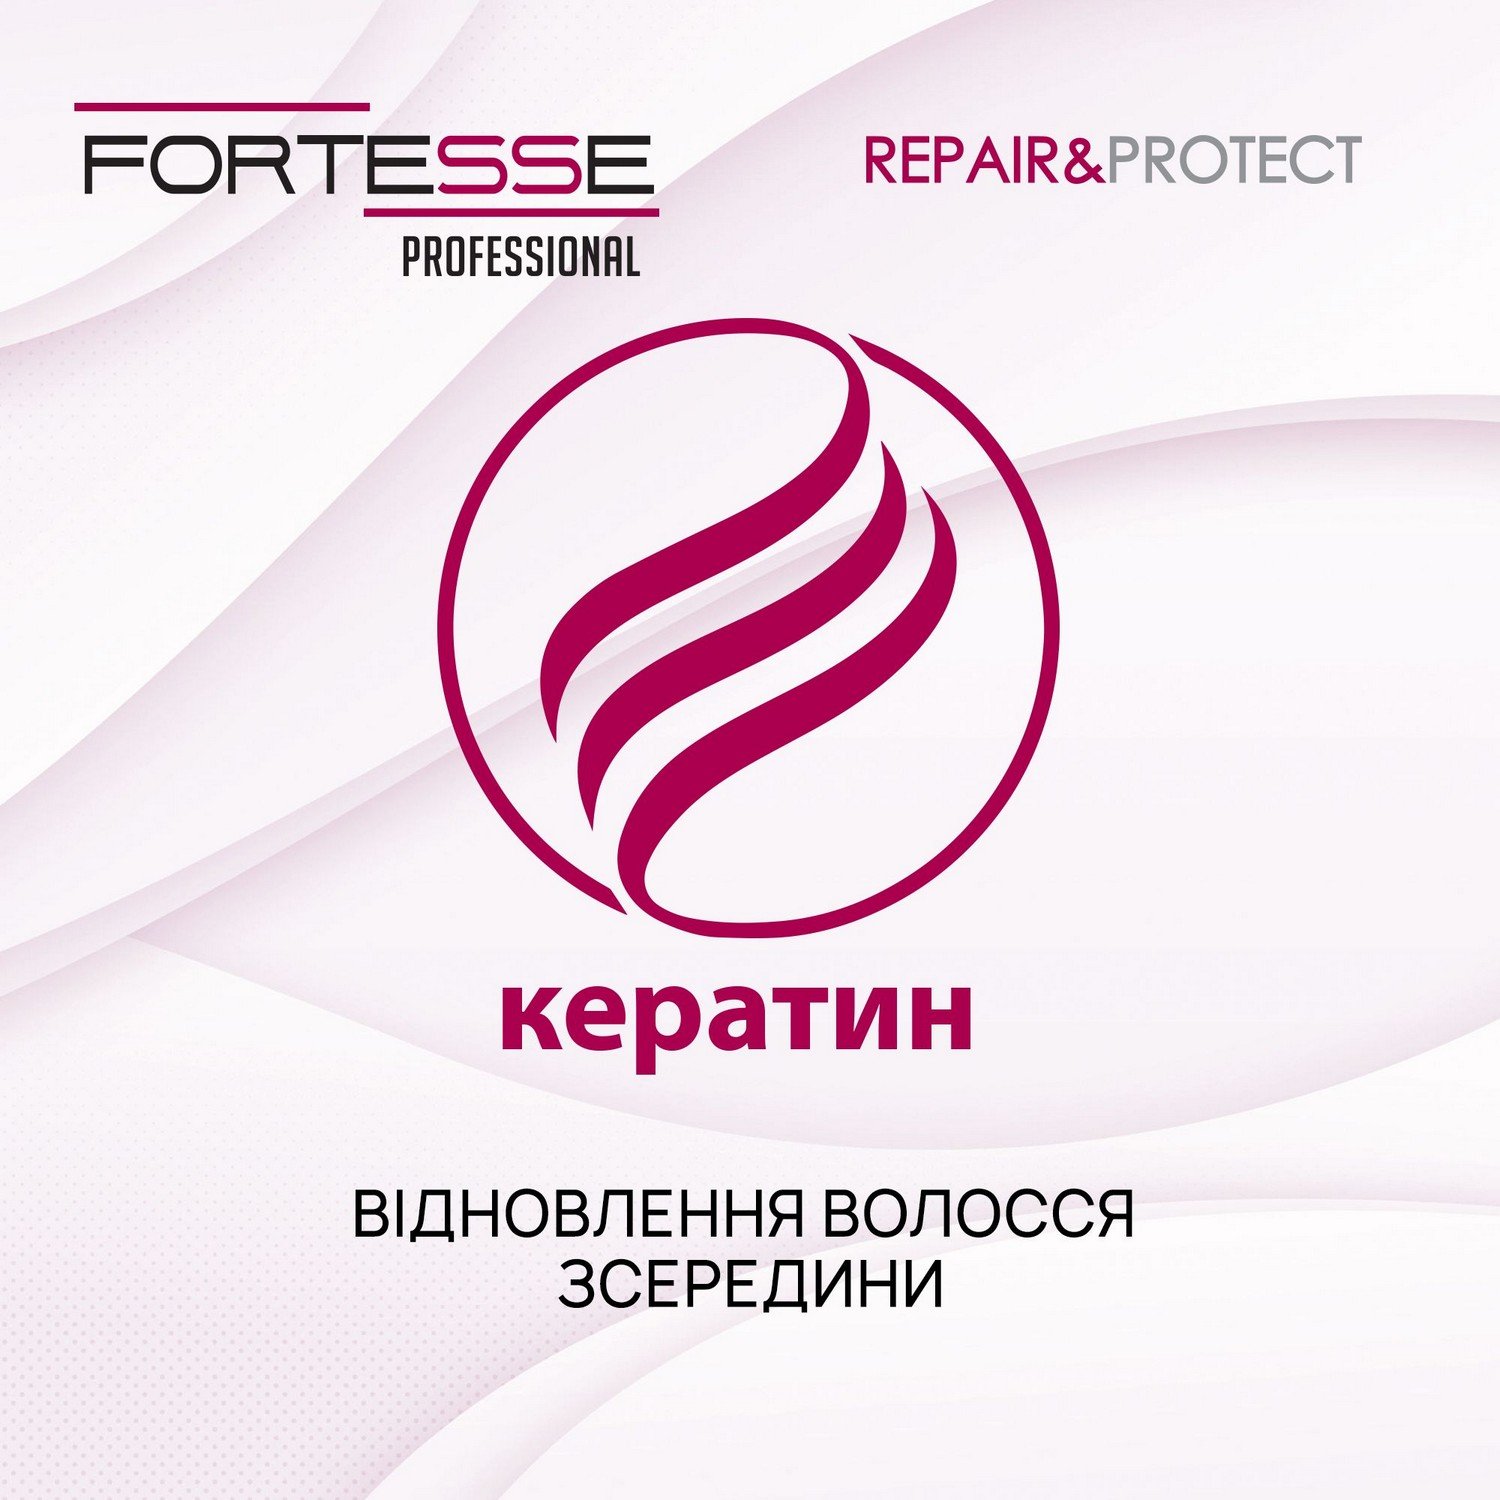 Восстанавливающий шампунь Fortesse Professional Repair&Protect для сухих, поврежденных, нуждающихся в питании волос, 400 мл - фото 4